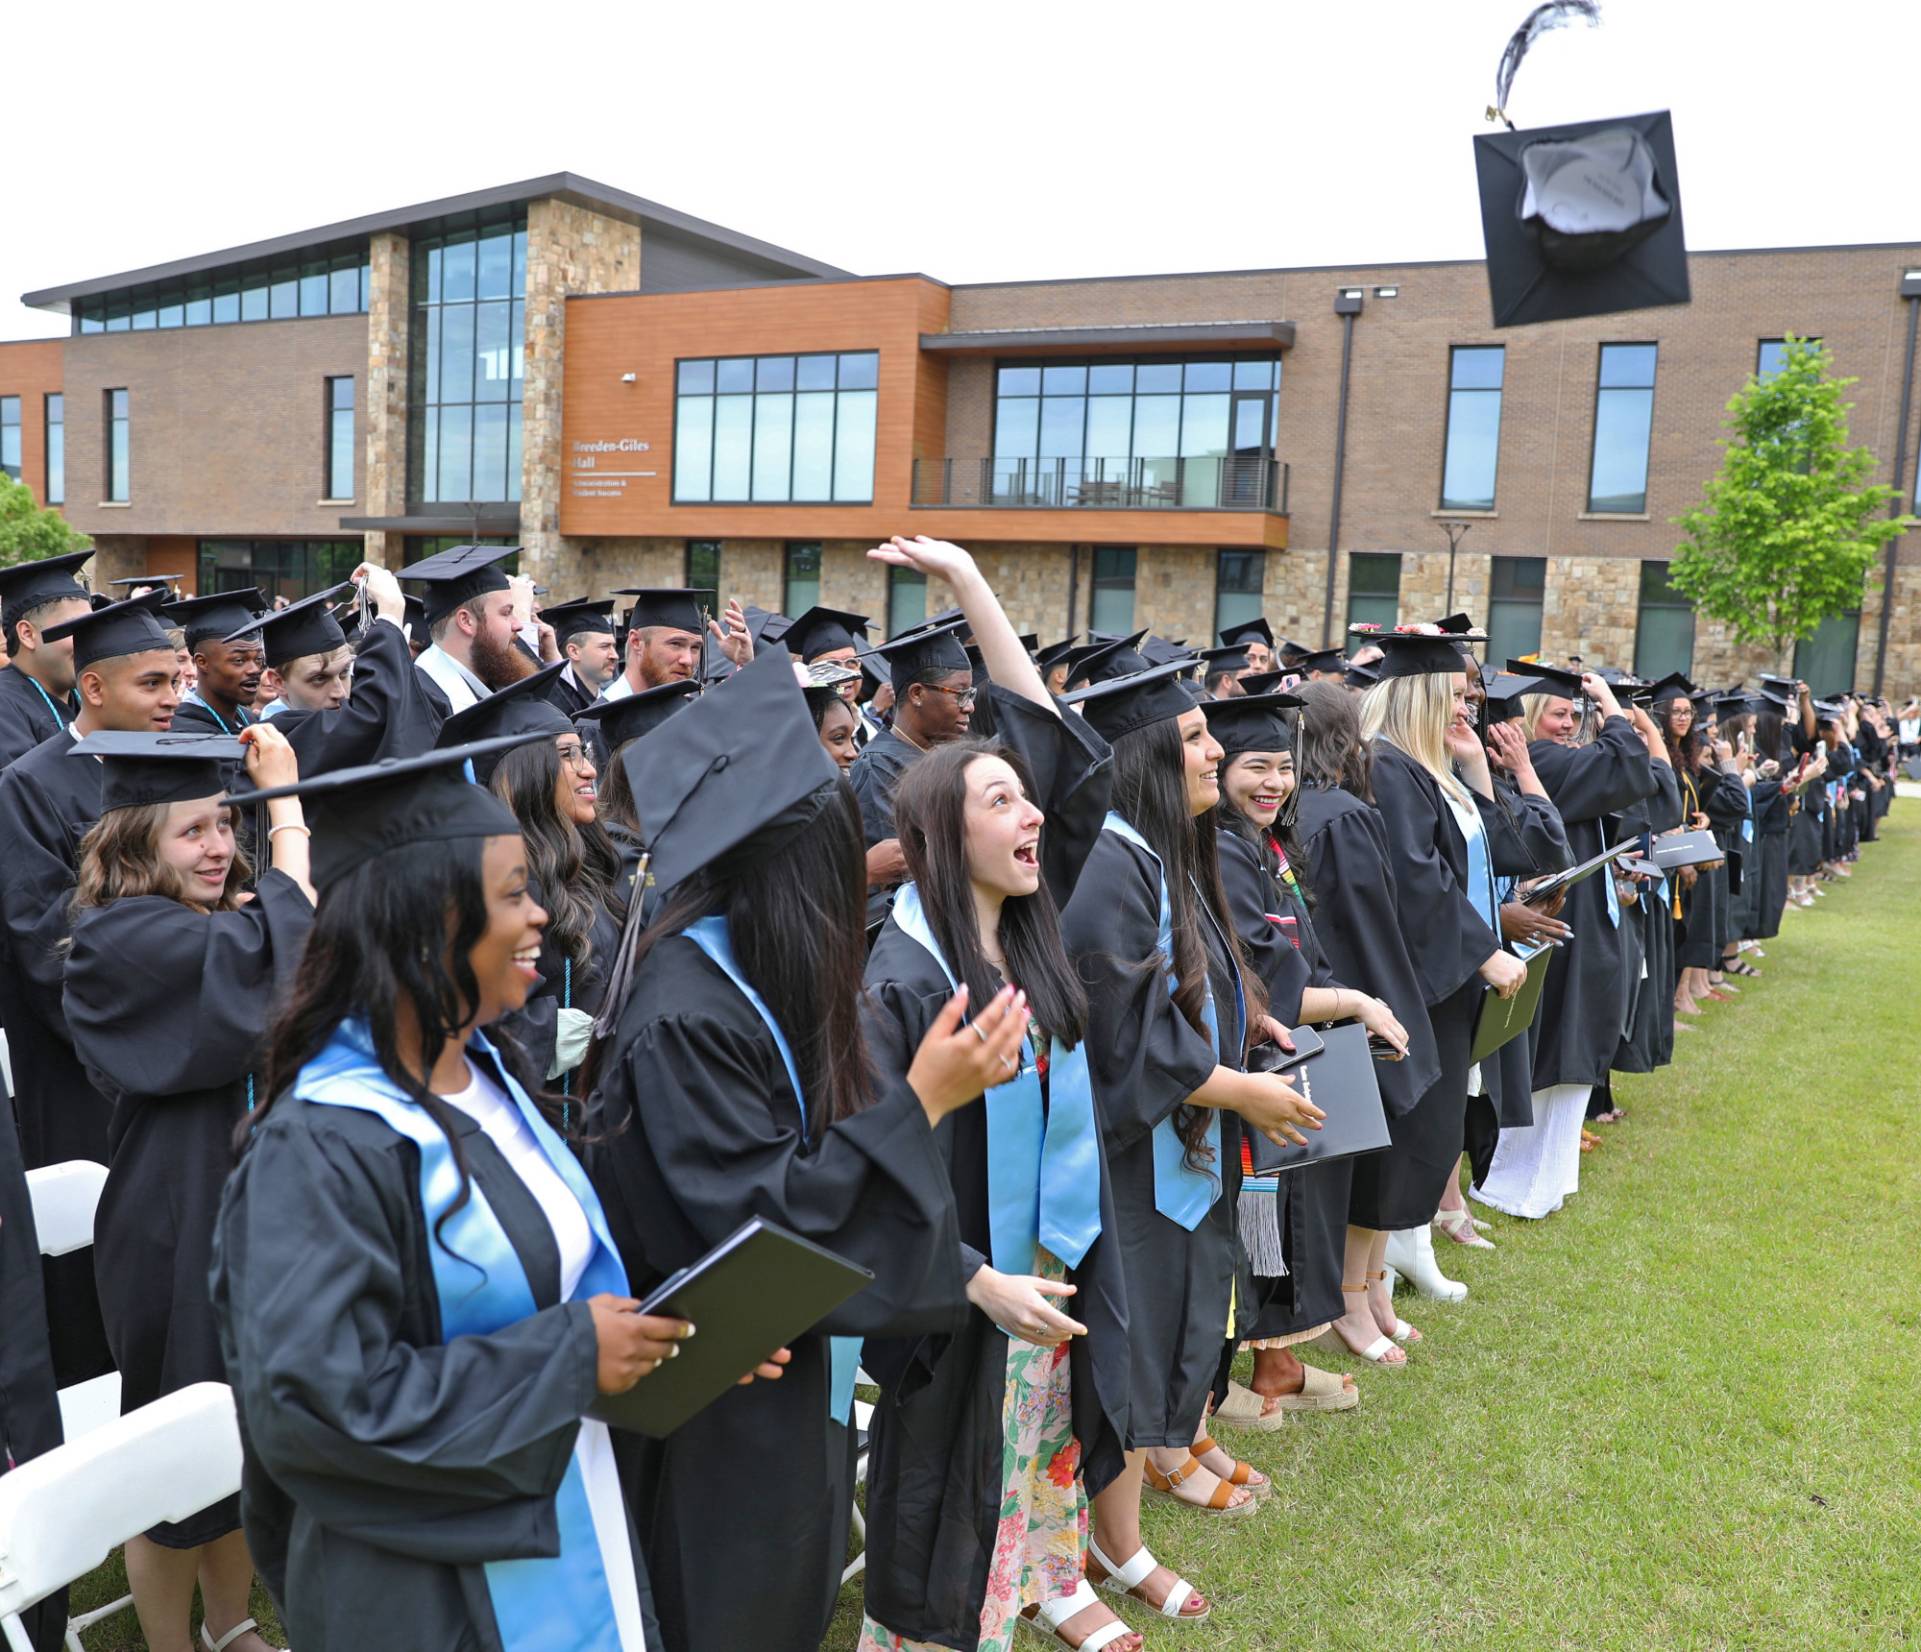 graduates tossing caps in the air